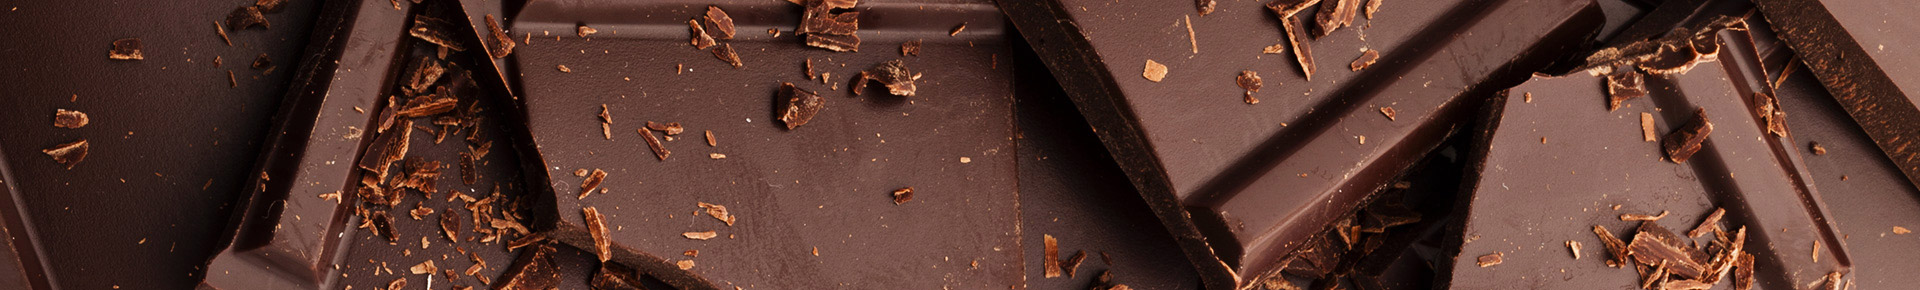 Una croccante copertura di raffinato cioccolato racchiude una soffice mousse